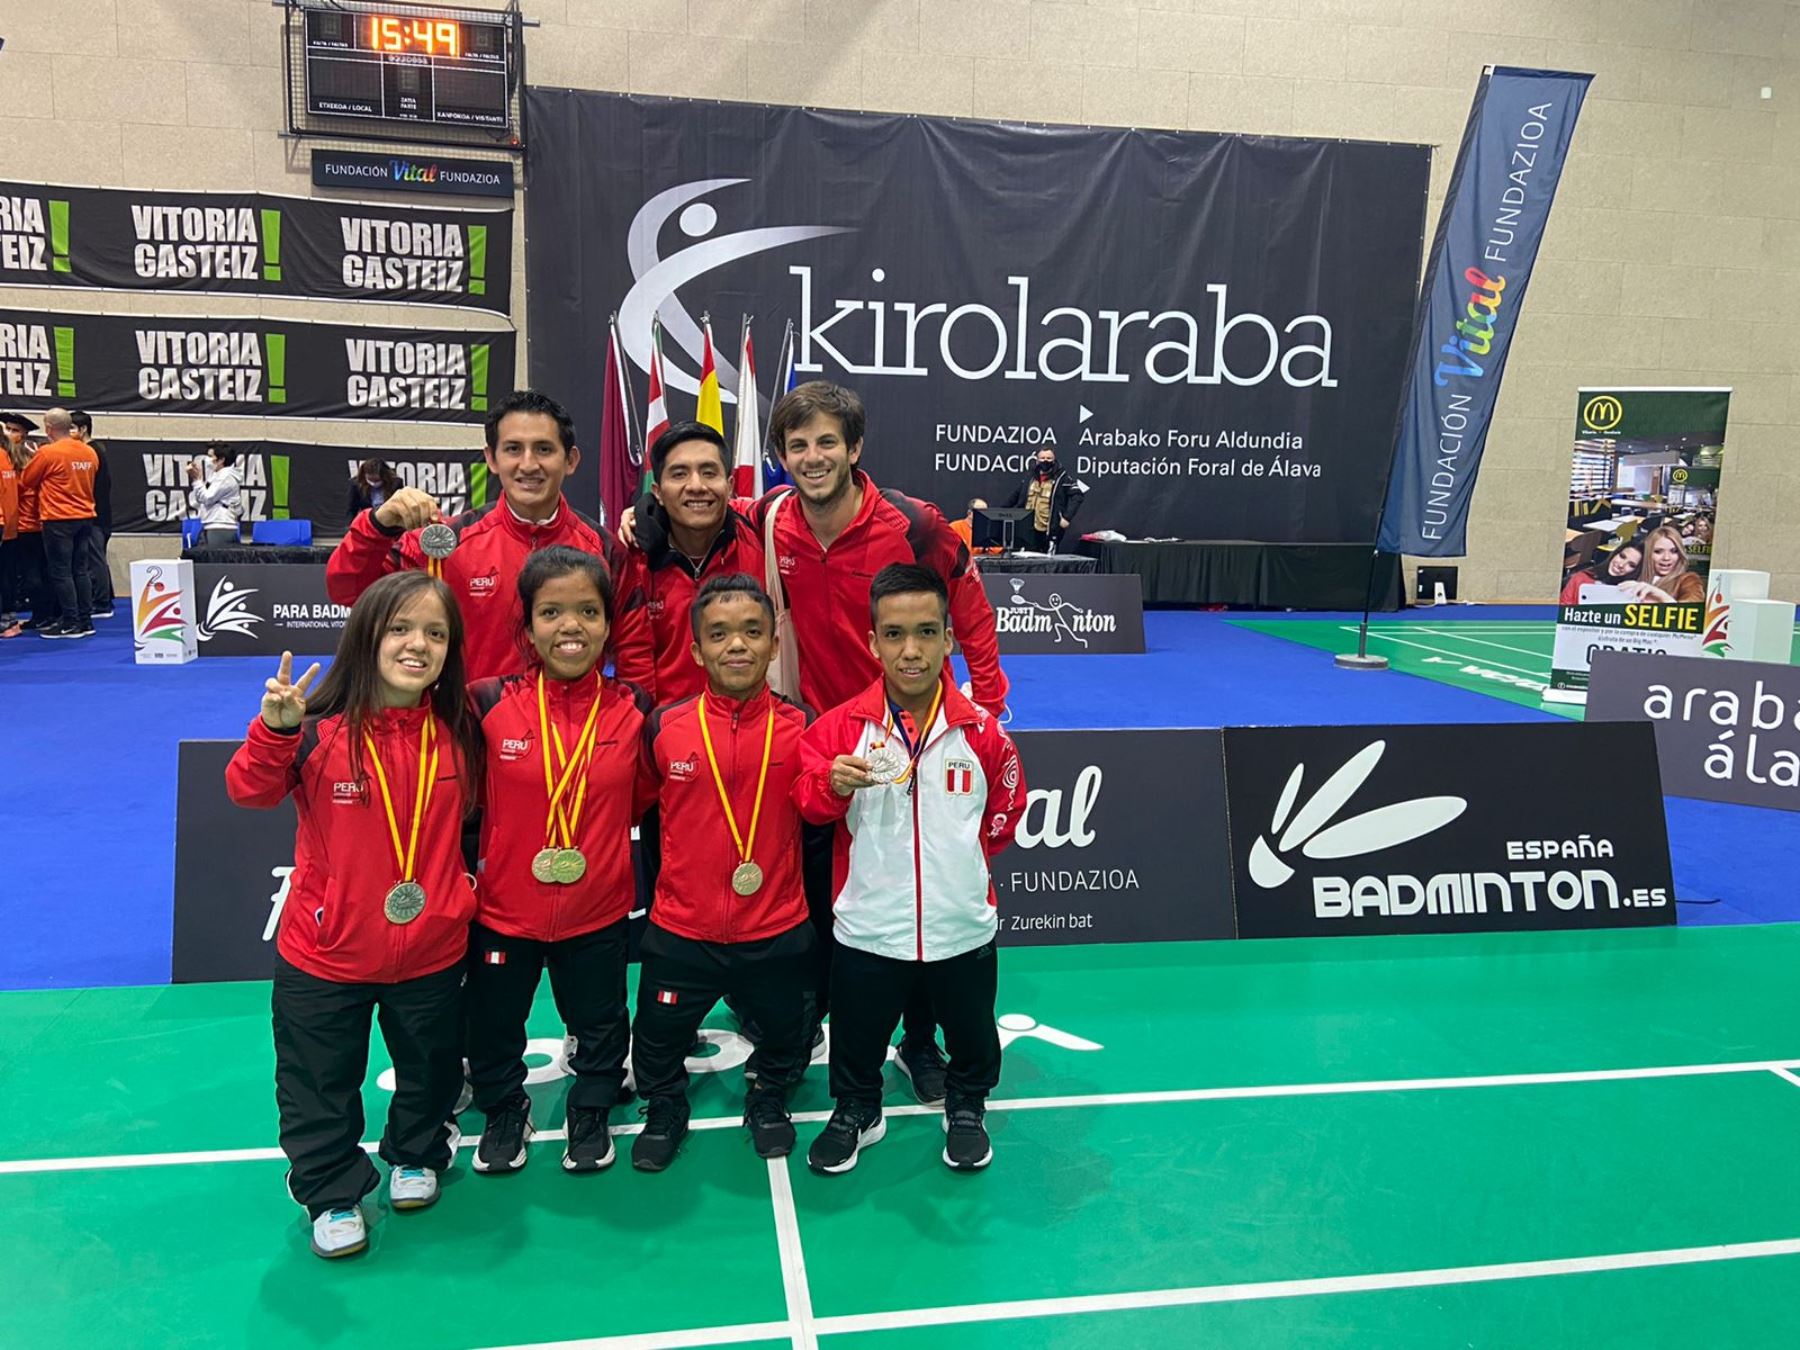 La selección peruana de parabádminton se lució en su primera competición internacional en España